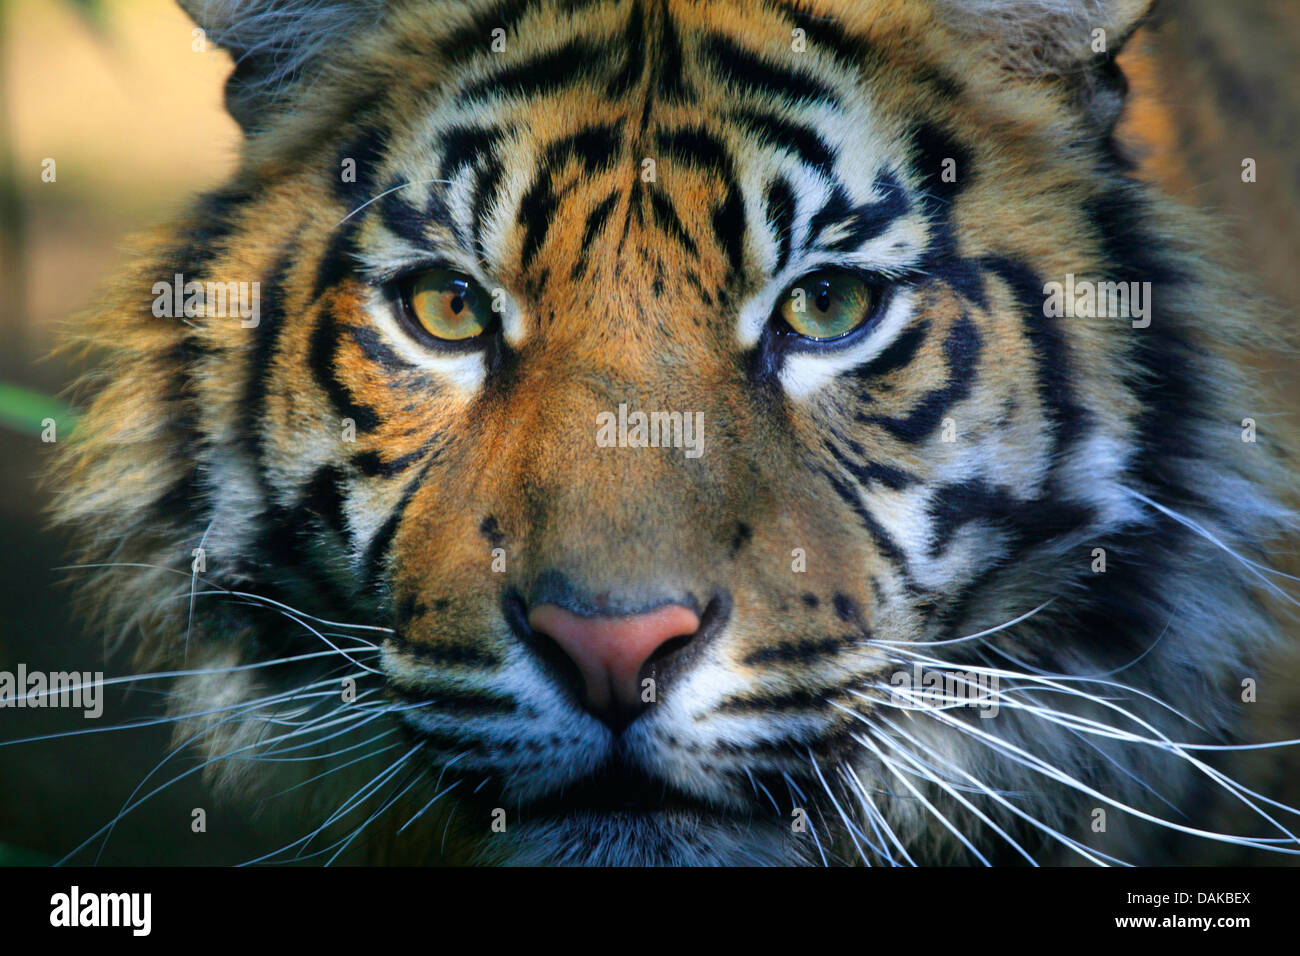 Sumatran tiger (Panthera tigris sumatrae), portrait Stock Photo